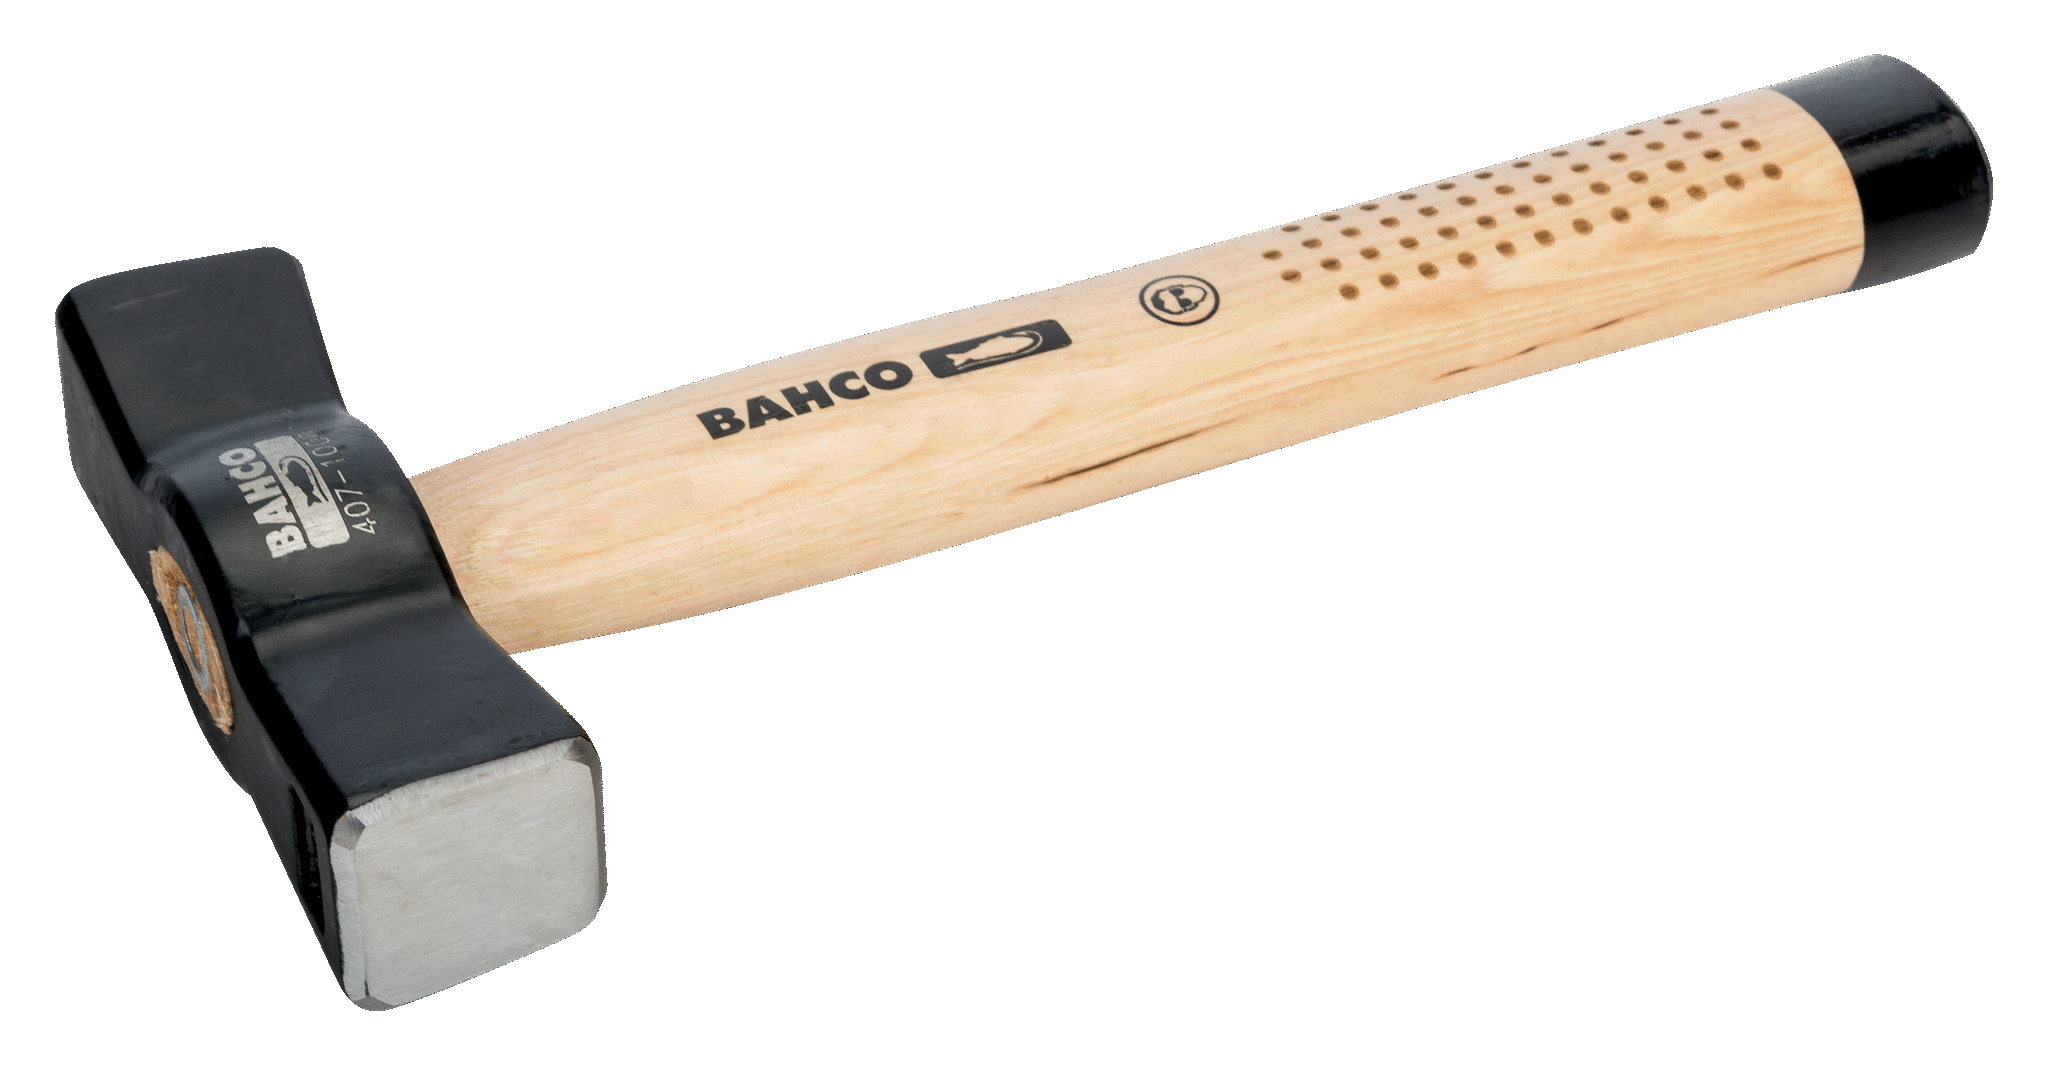 картинка Кувалда с заостренным бойком, деревянная рукоятка BAHCO 407-700 от магазина "Элит-инструмент"